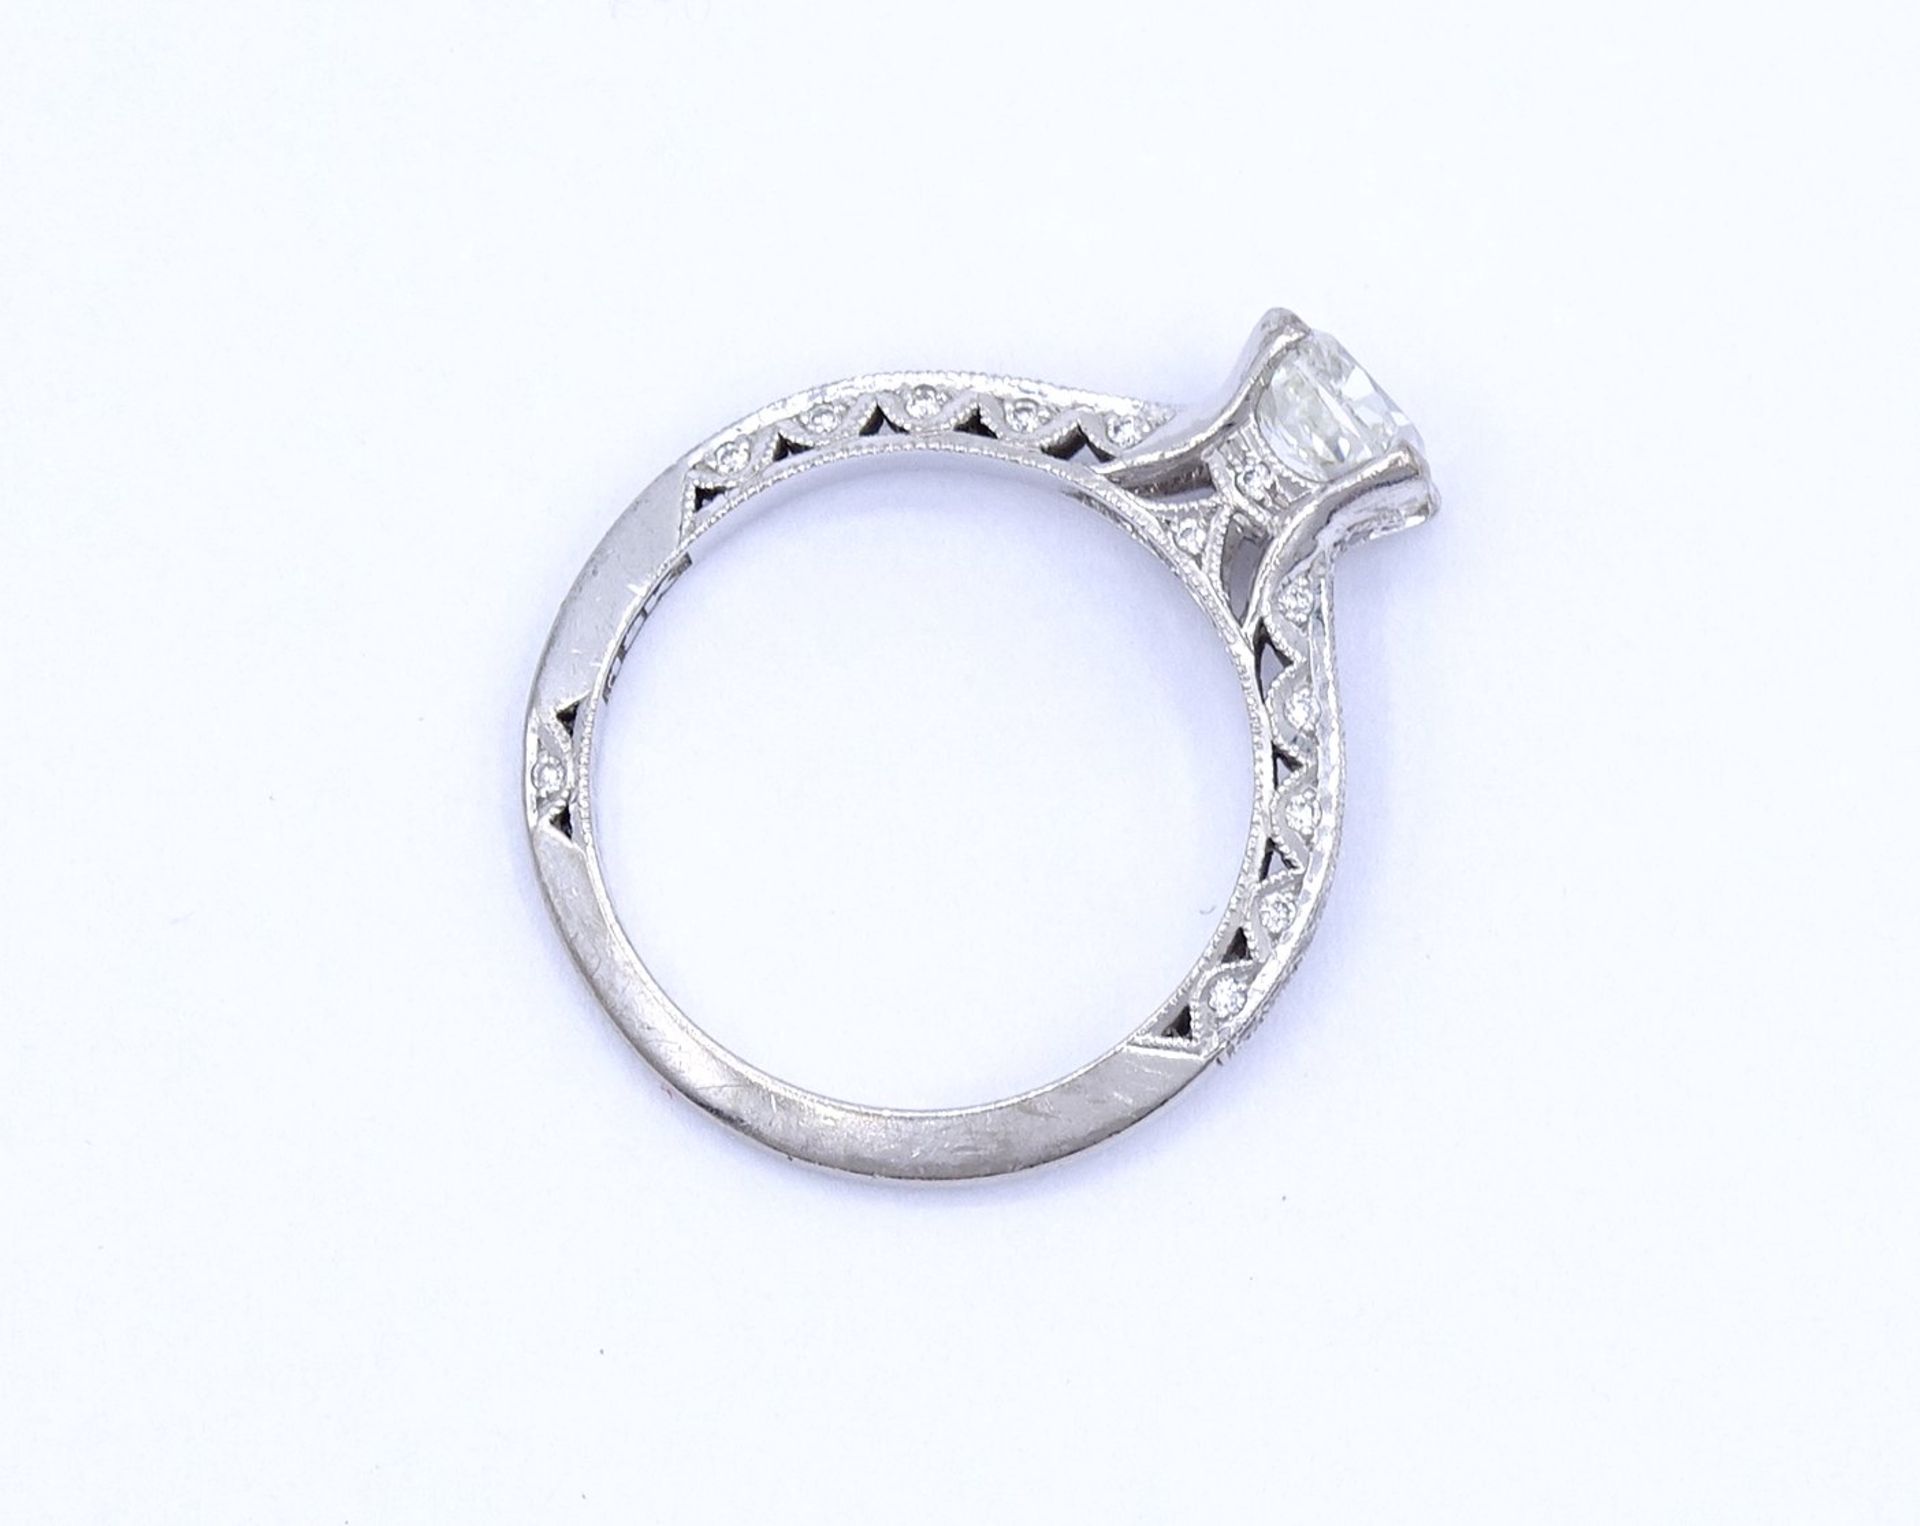 Princess Cut Ring - Verlobungsring , Princess 1,0ct., und 47 kl. Diamanten si, G-H, WG 18K "Tacori" - Image 7 of 20